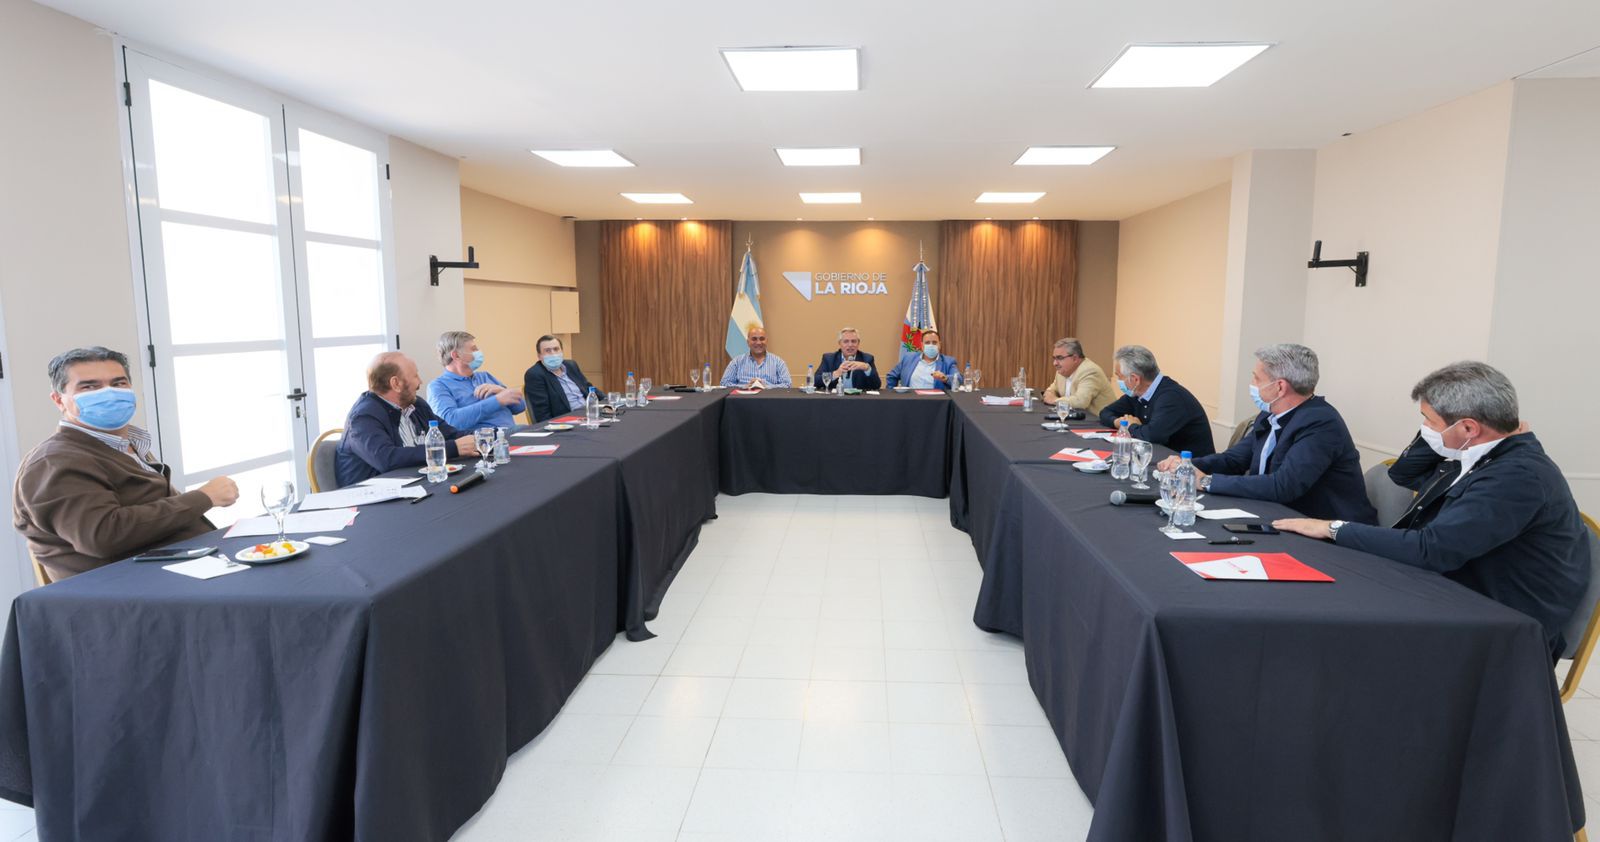 Alberto Rodríguez Saá se reunió con el presidente y un grupo de gobernadores